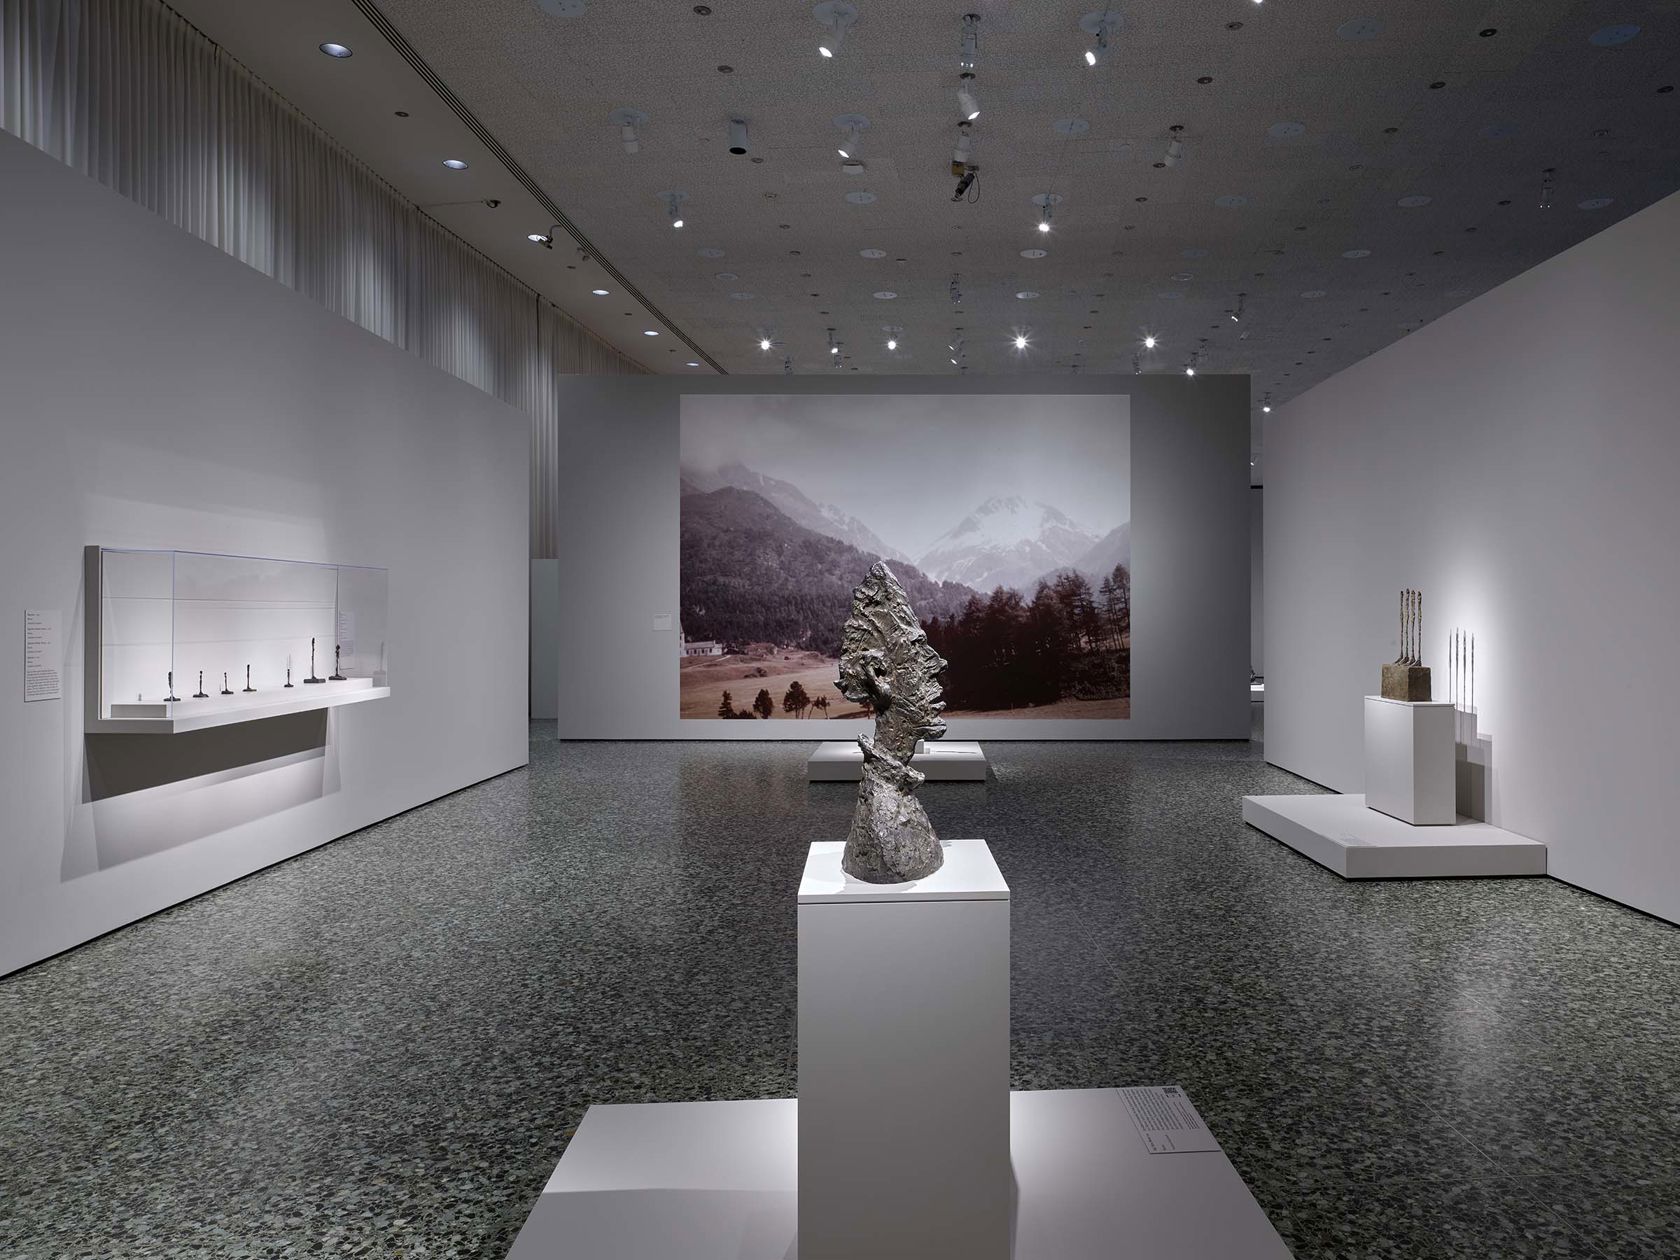 Alberto Giacometti: Toward The Ultimate Figure - SFMOMA Museum Store